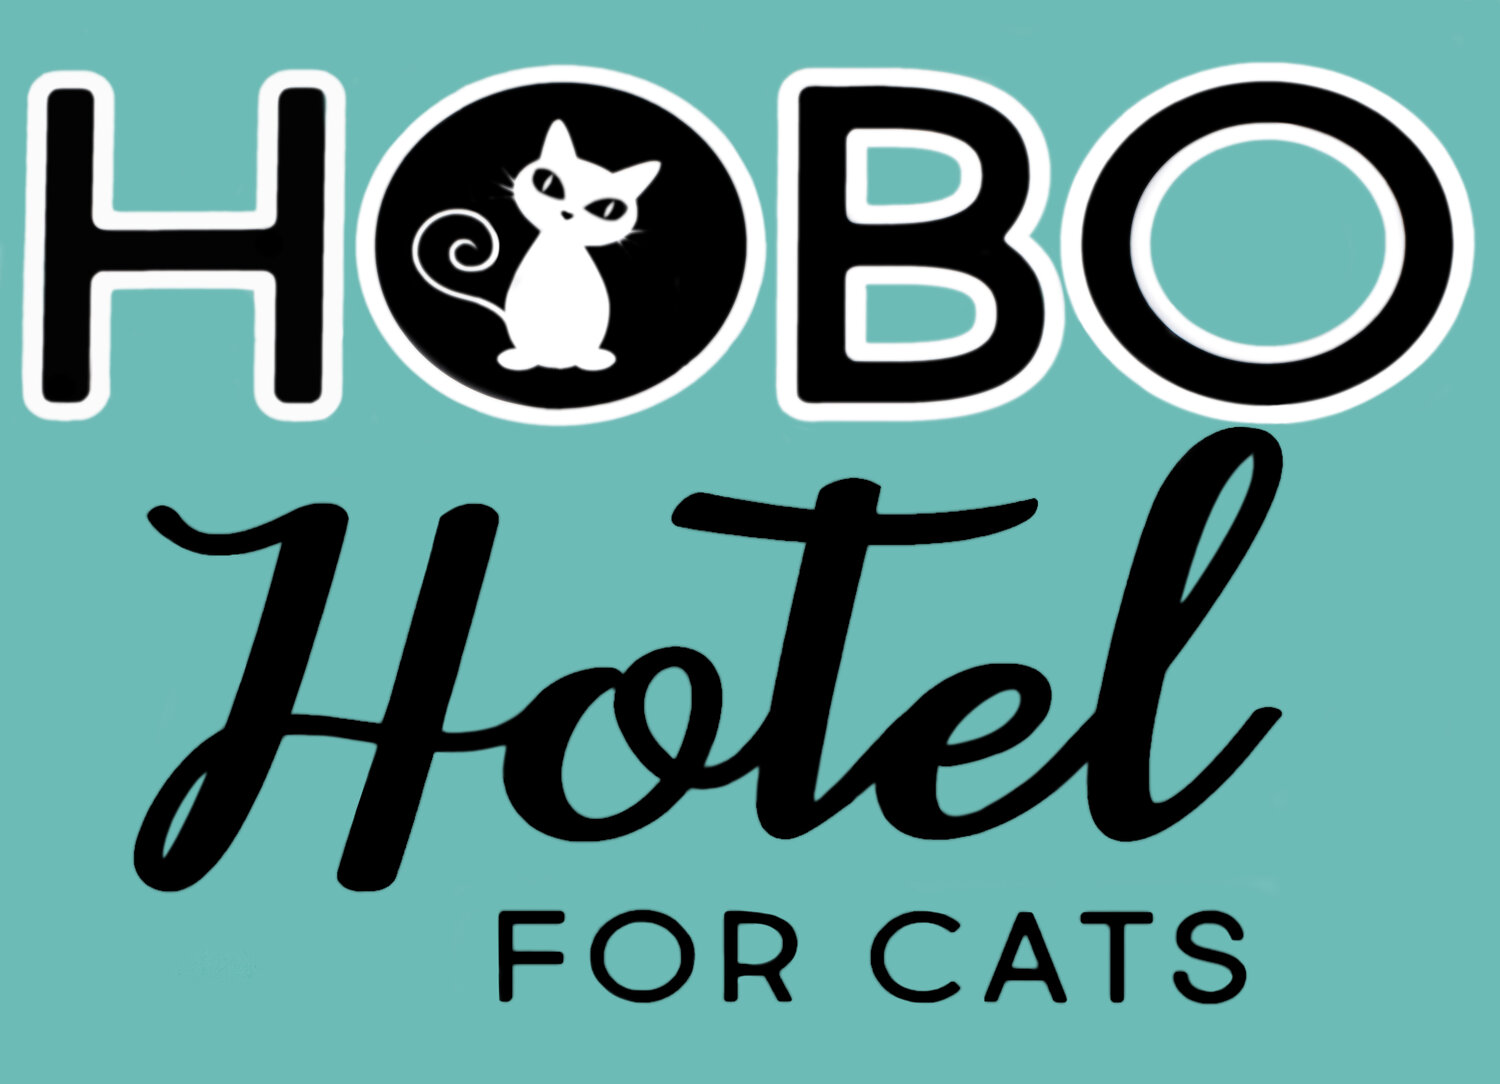 Hobo Hotel